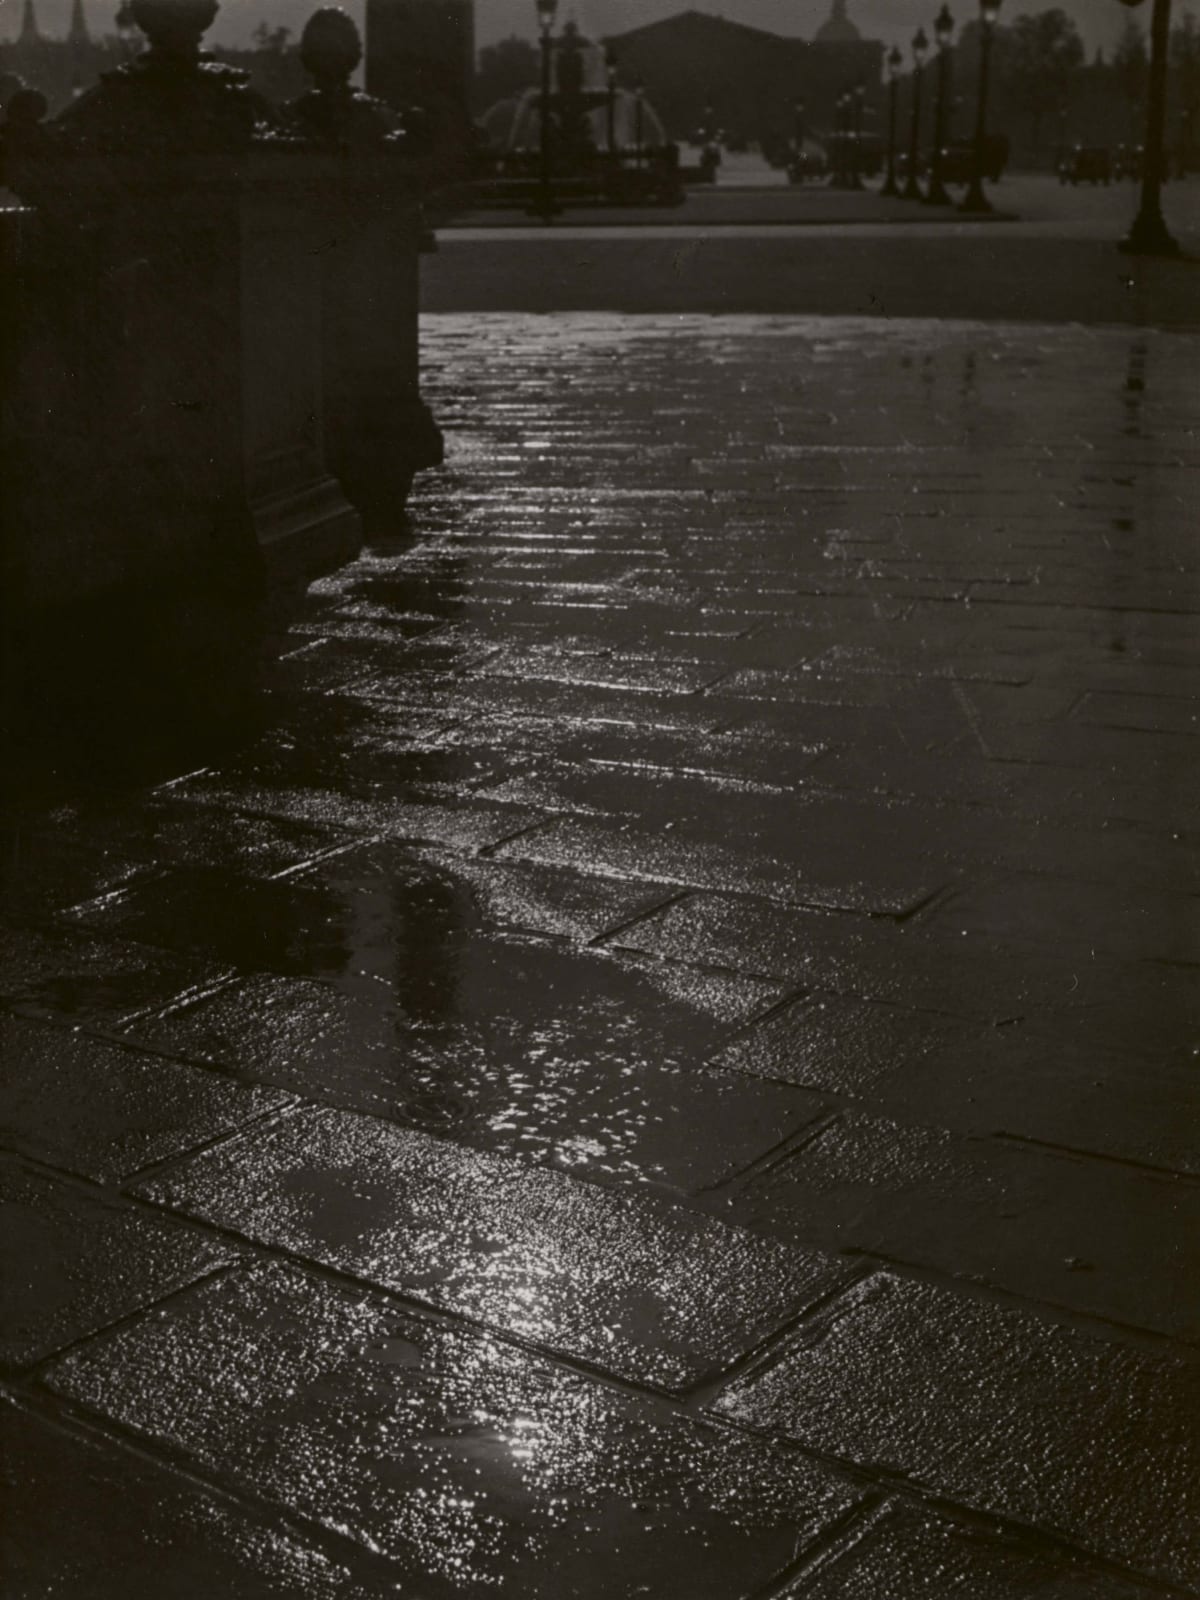 Brassaï, Pavement Reflection, Place de la Concorde, 1930's